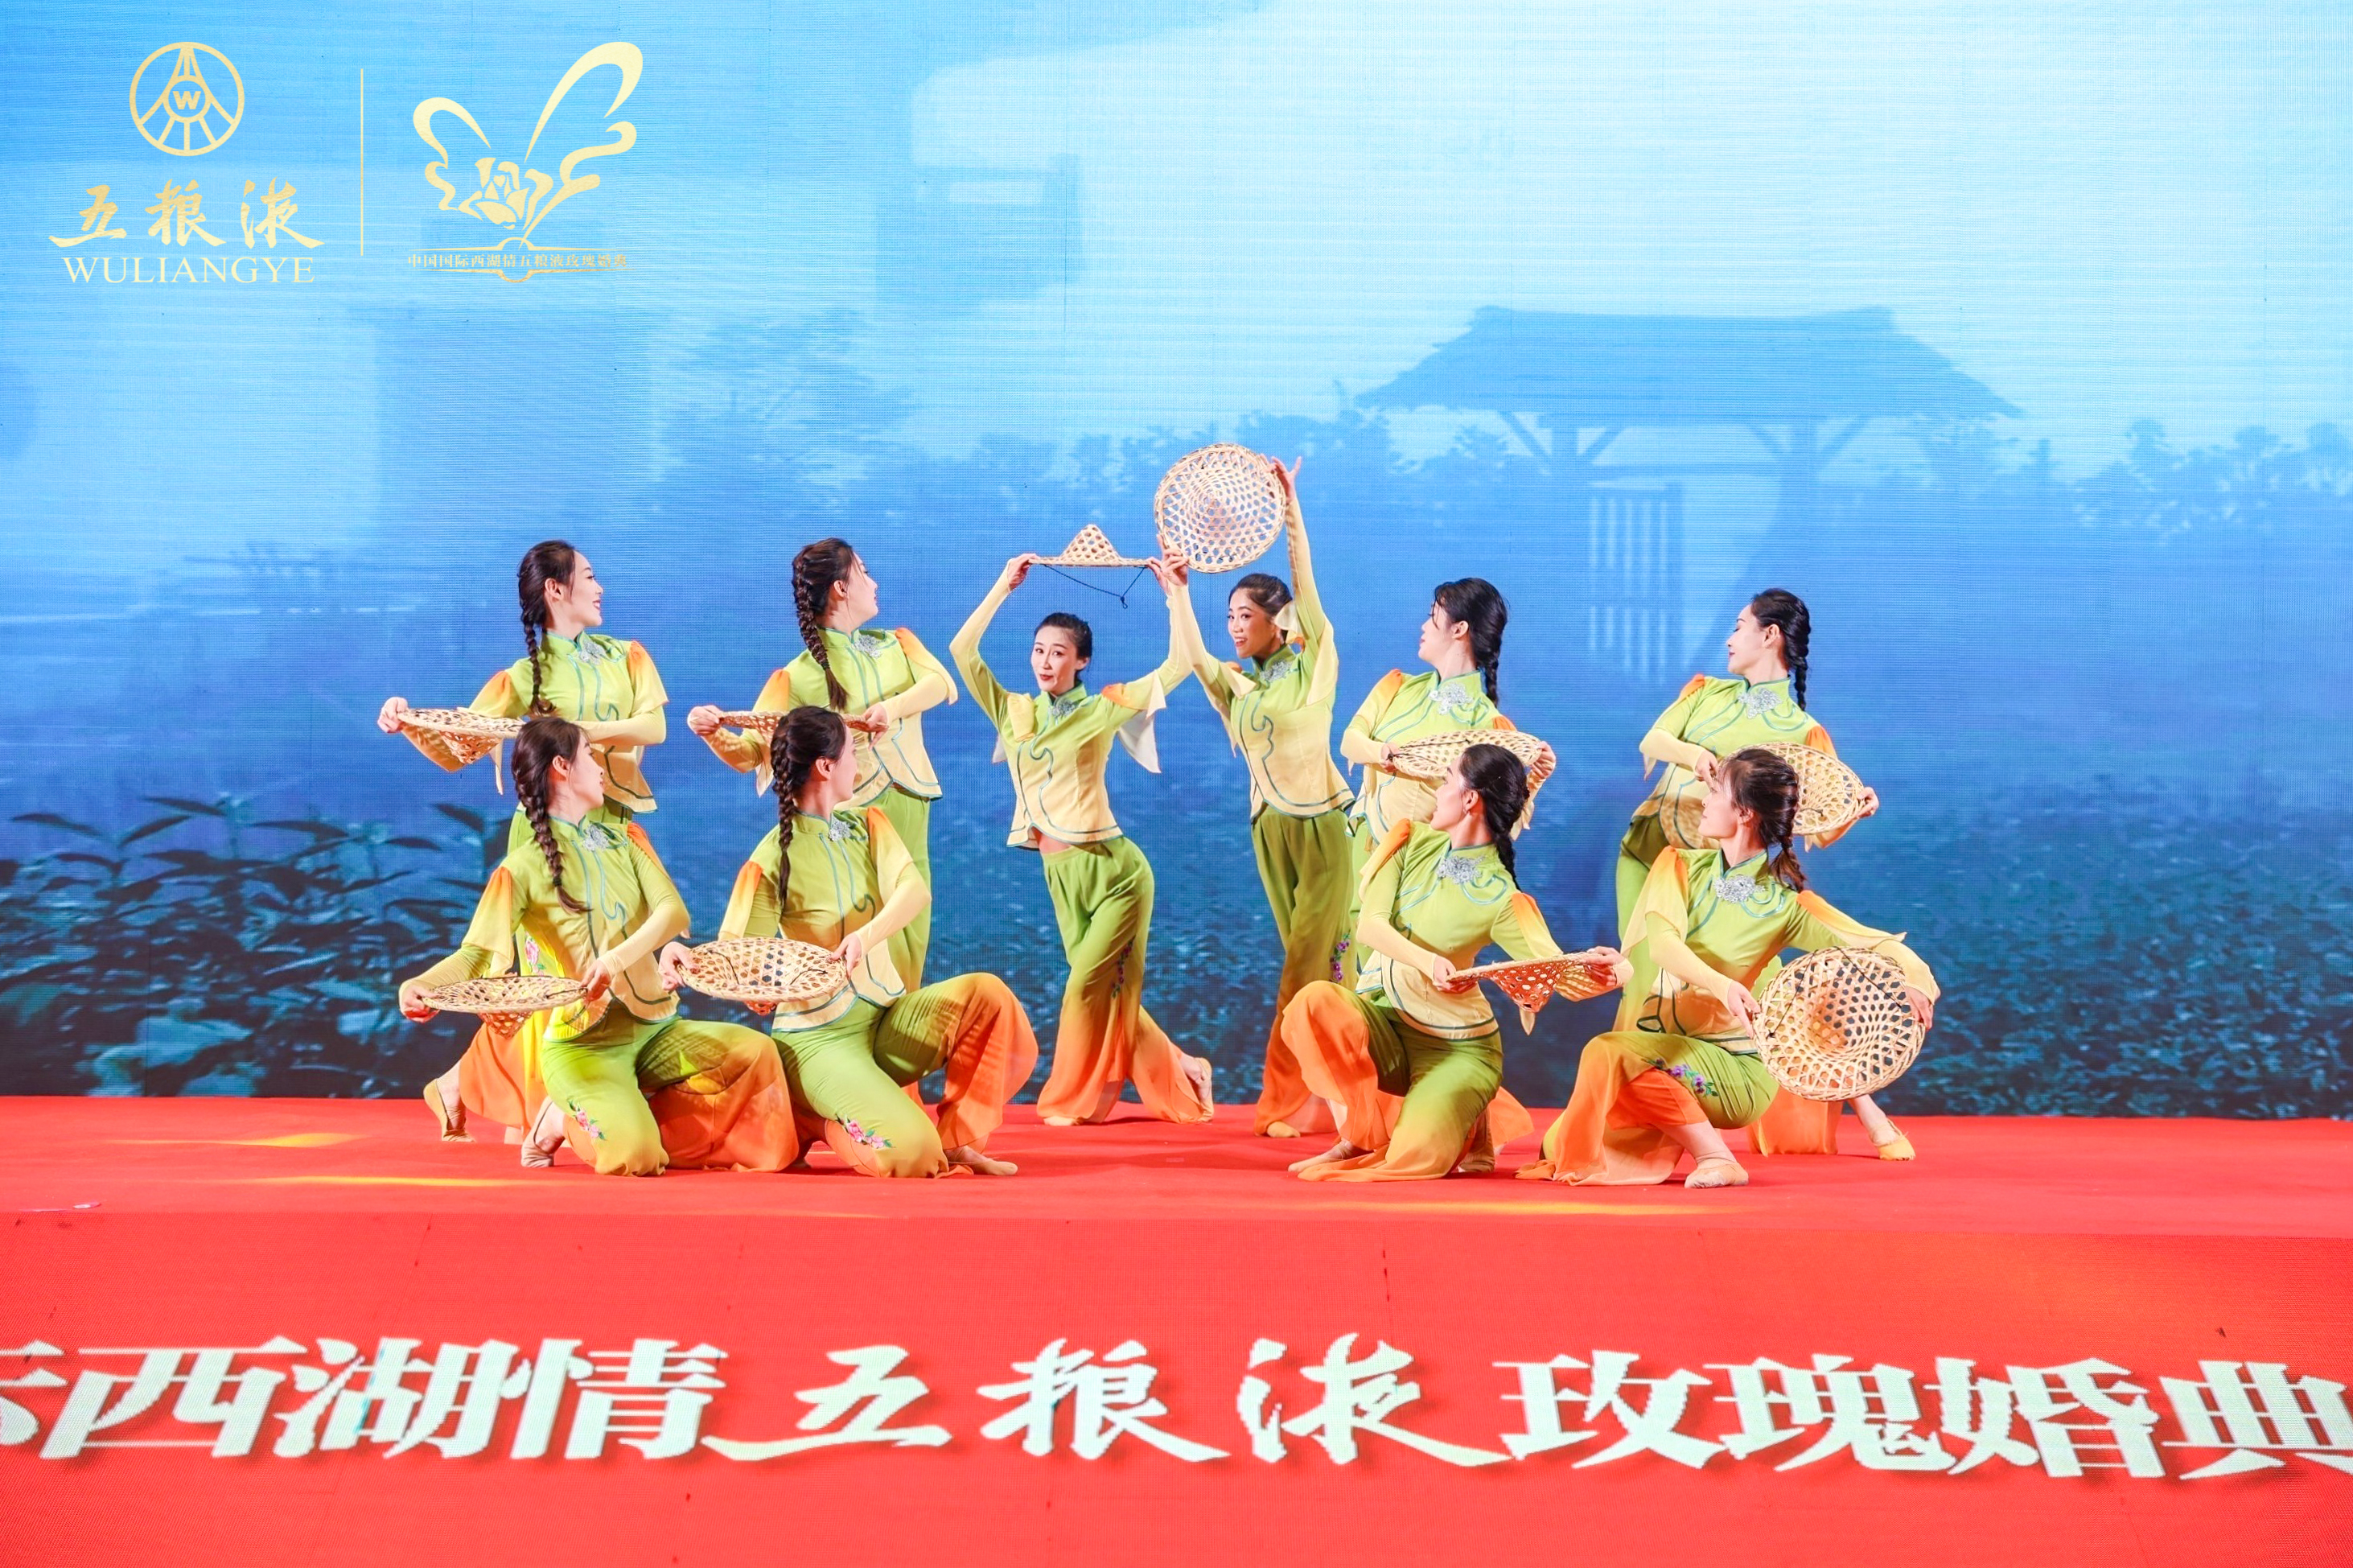 传千年文化 敬和美中国，中国国际西湖情五粮液玫瑰婚典走进济南